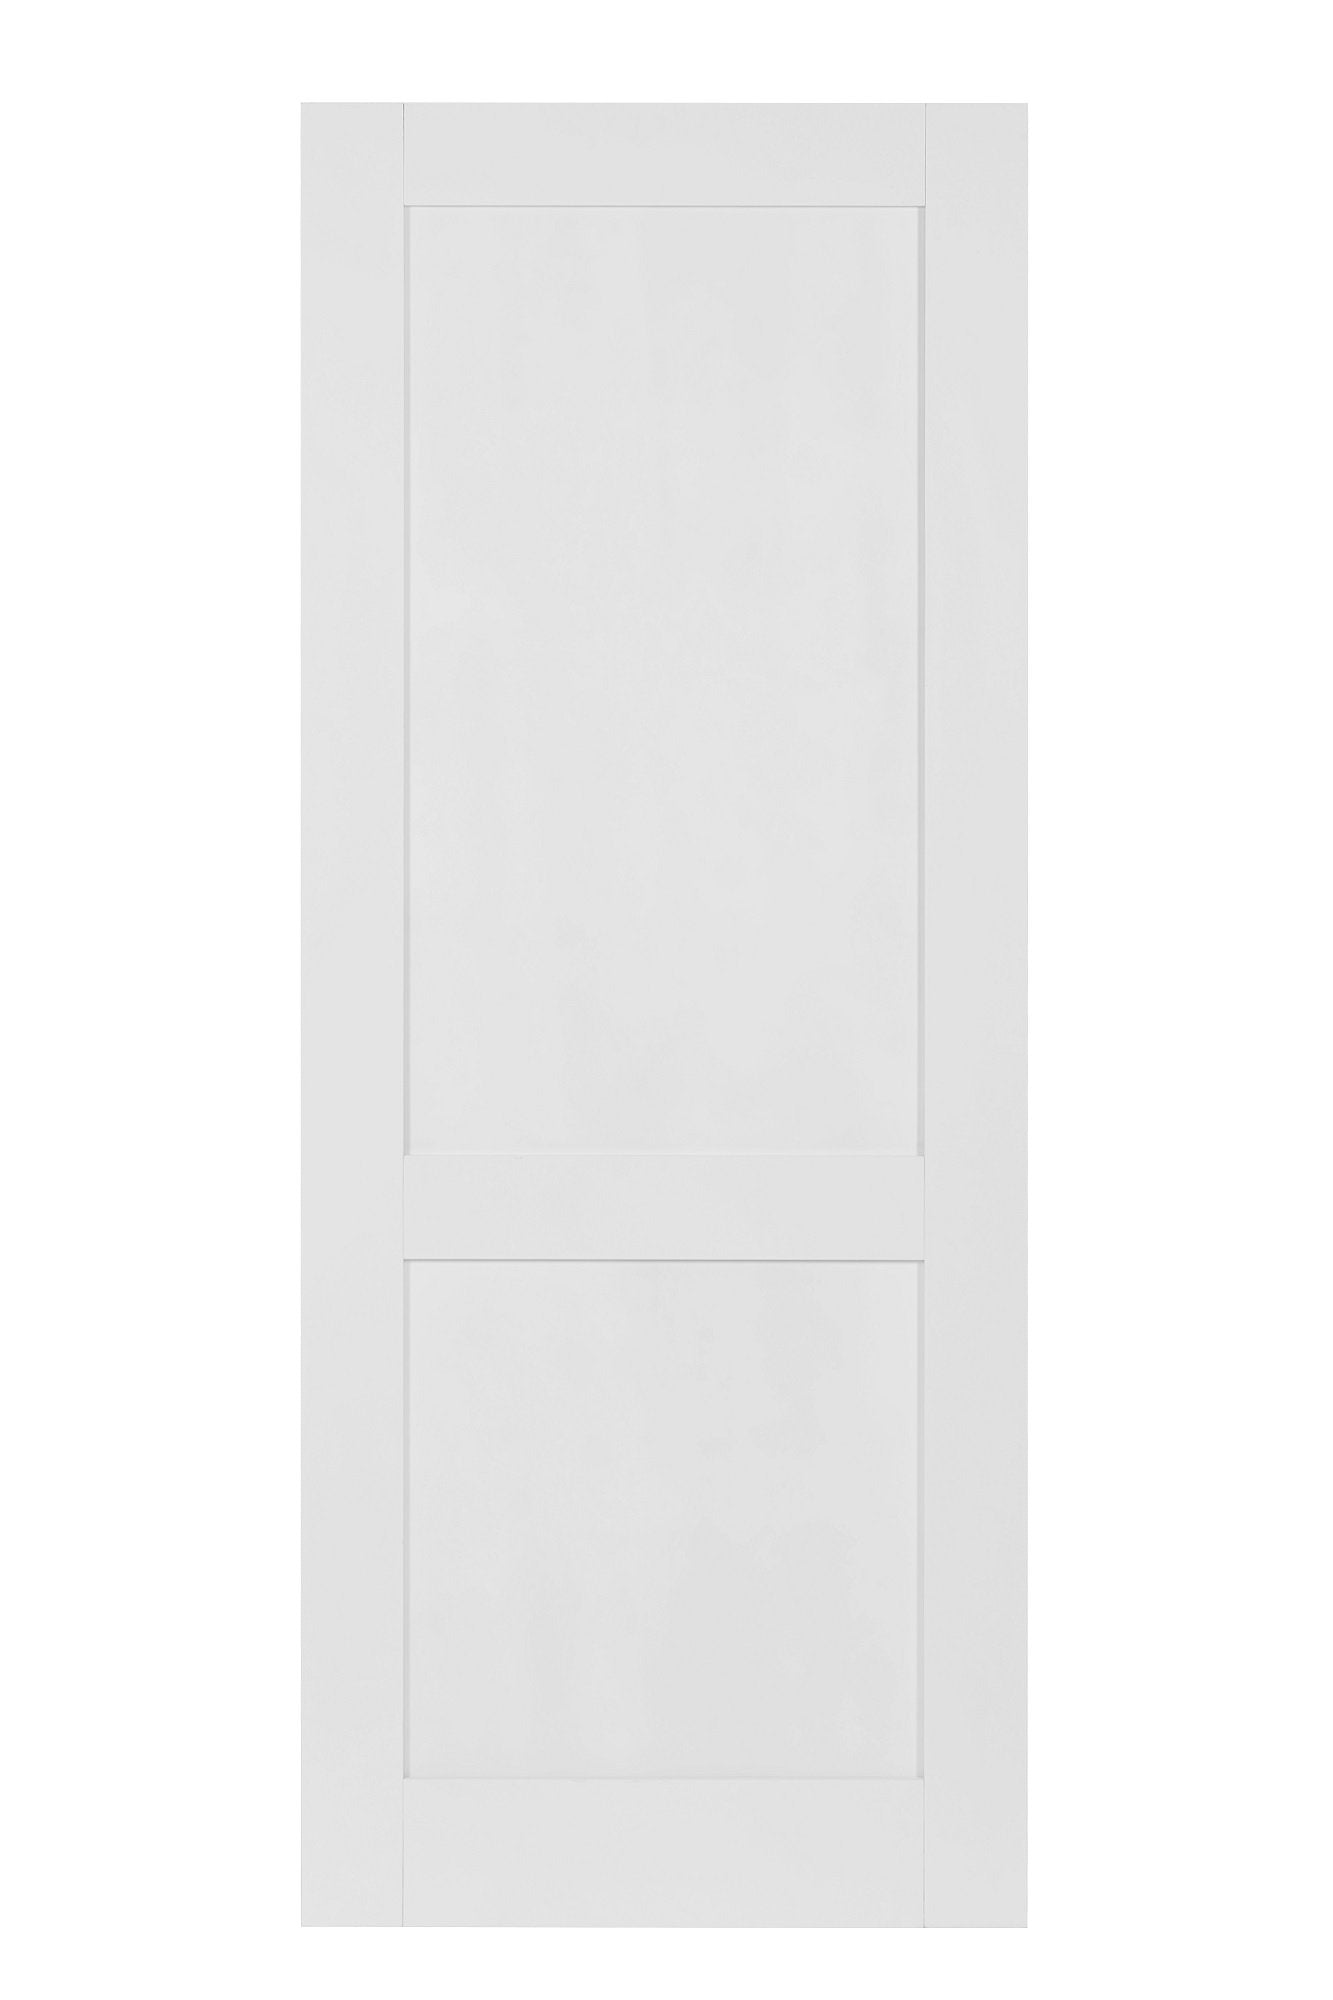 32 in. 1 Panel Solid Core Primed Panel Interior Door Slab